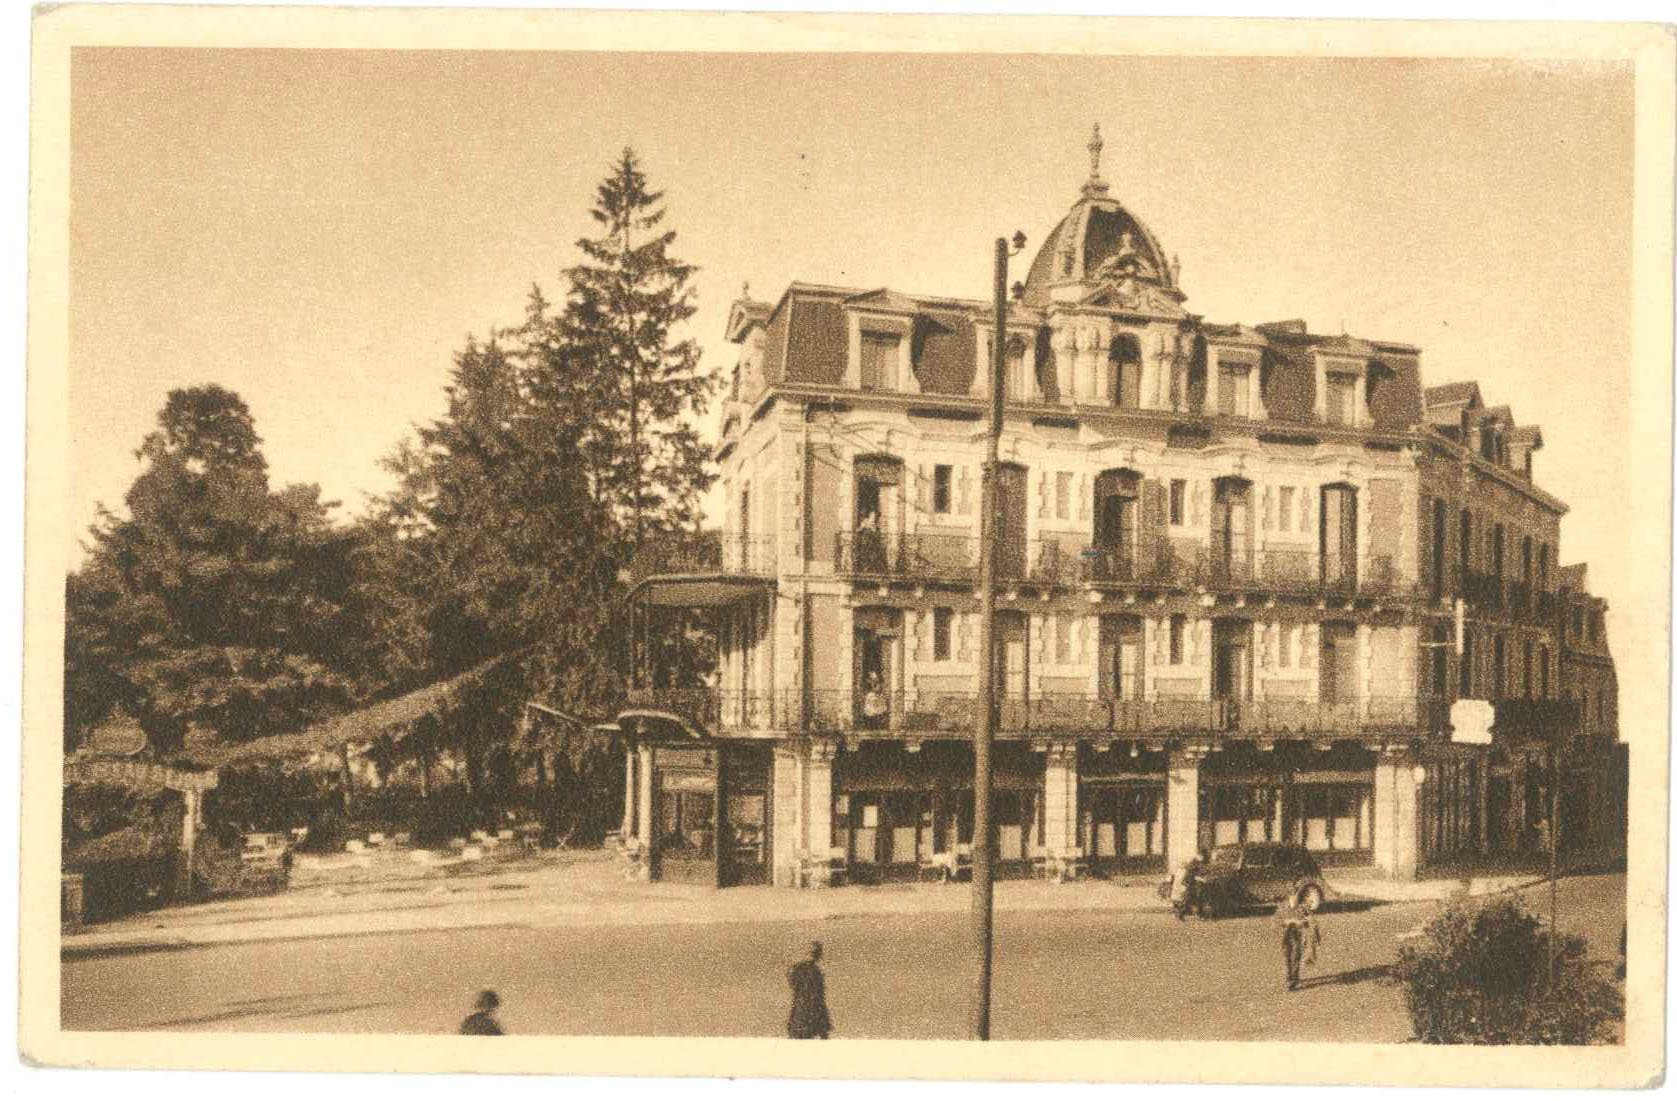 Postkarte mit Schwarz-Weiß Foto: Ansicht eines dreistöckigen Hotels in Lourdes.